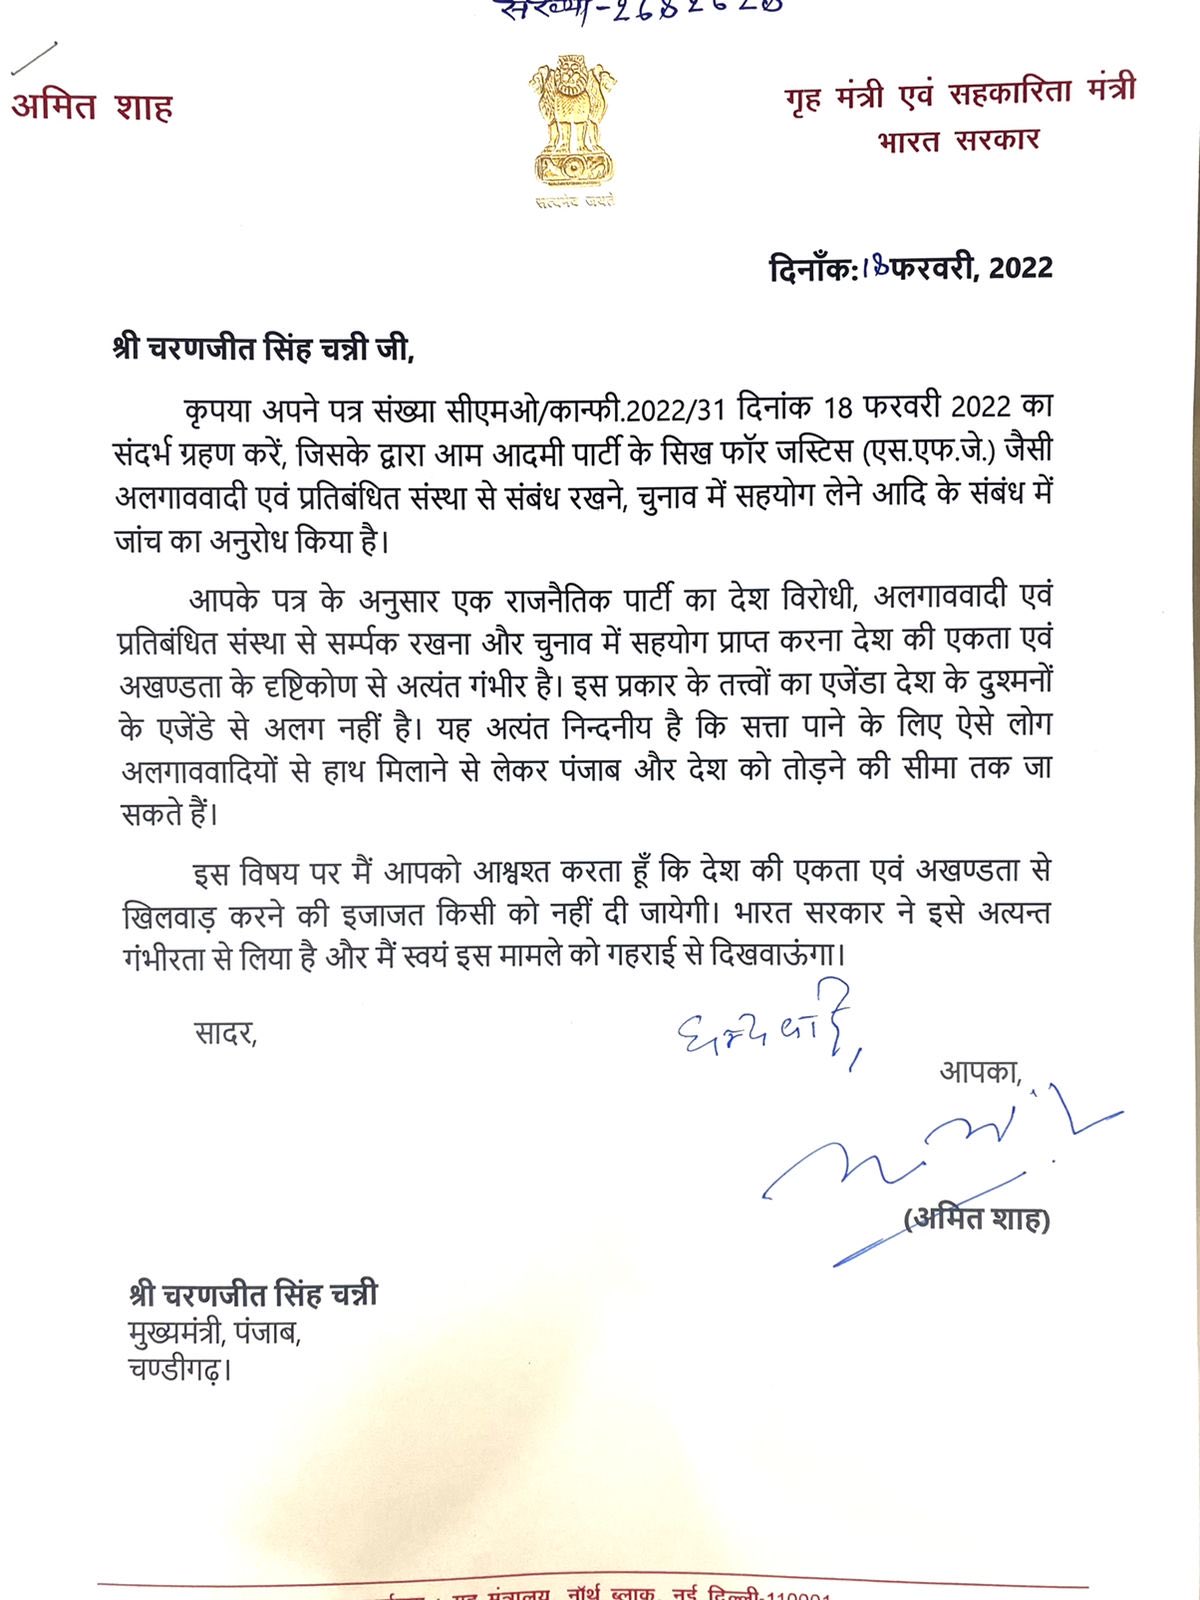 पंजाब के मुख्यमंत्री चरणजीत सिंह चन्नी का पत्र